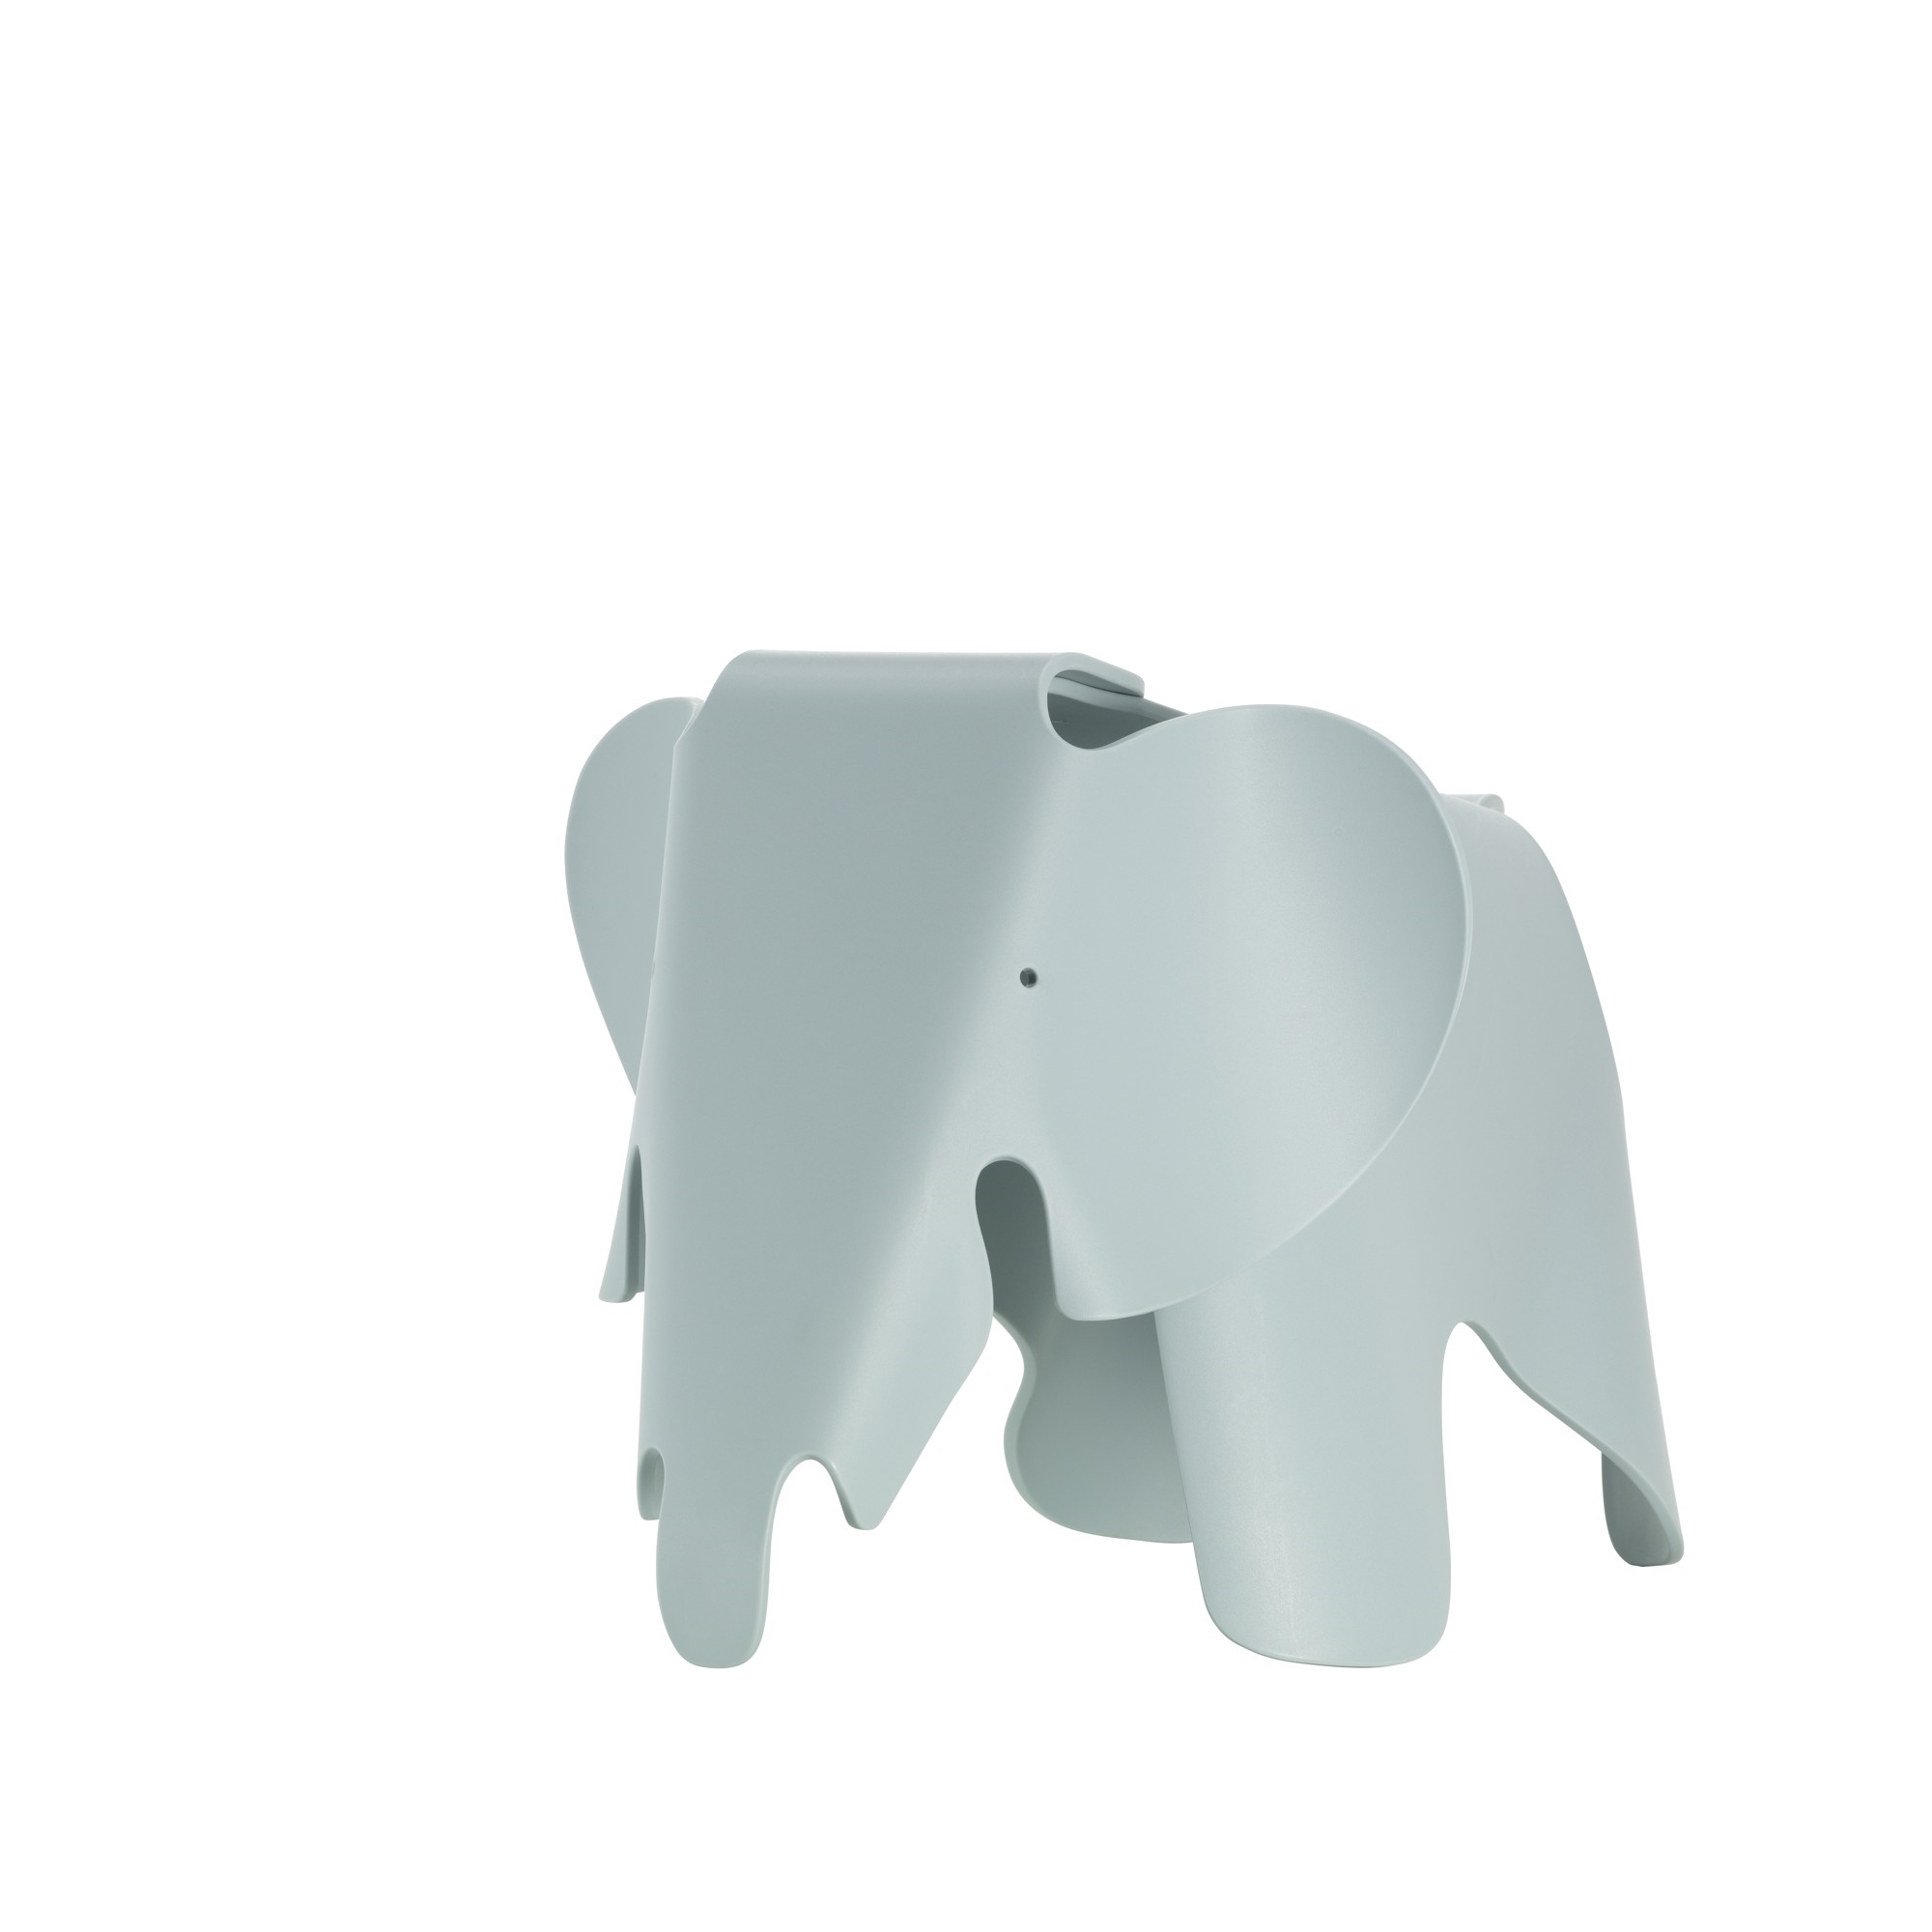 Eames Elephant Stool Groot Grijs van Vitra Gratis verzending!